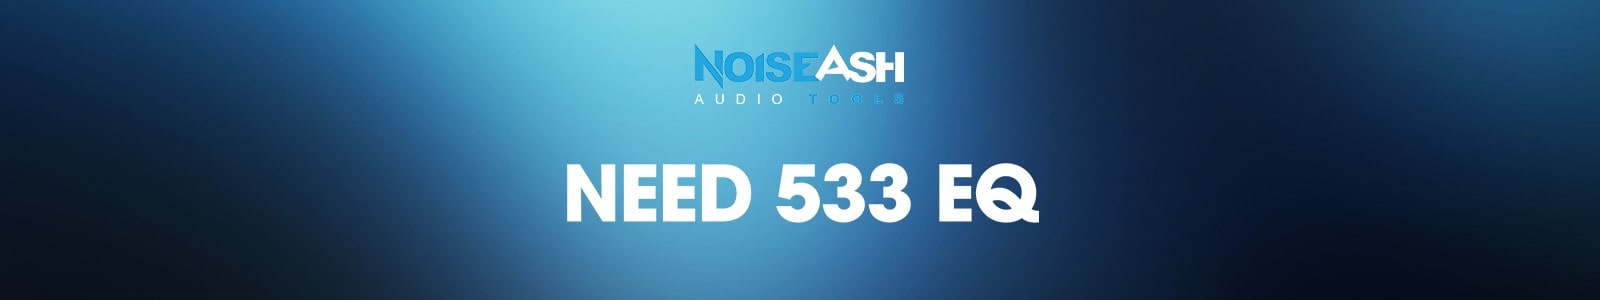 NEED 533 EQ by NoiseAsh